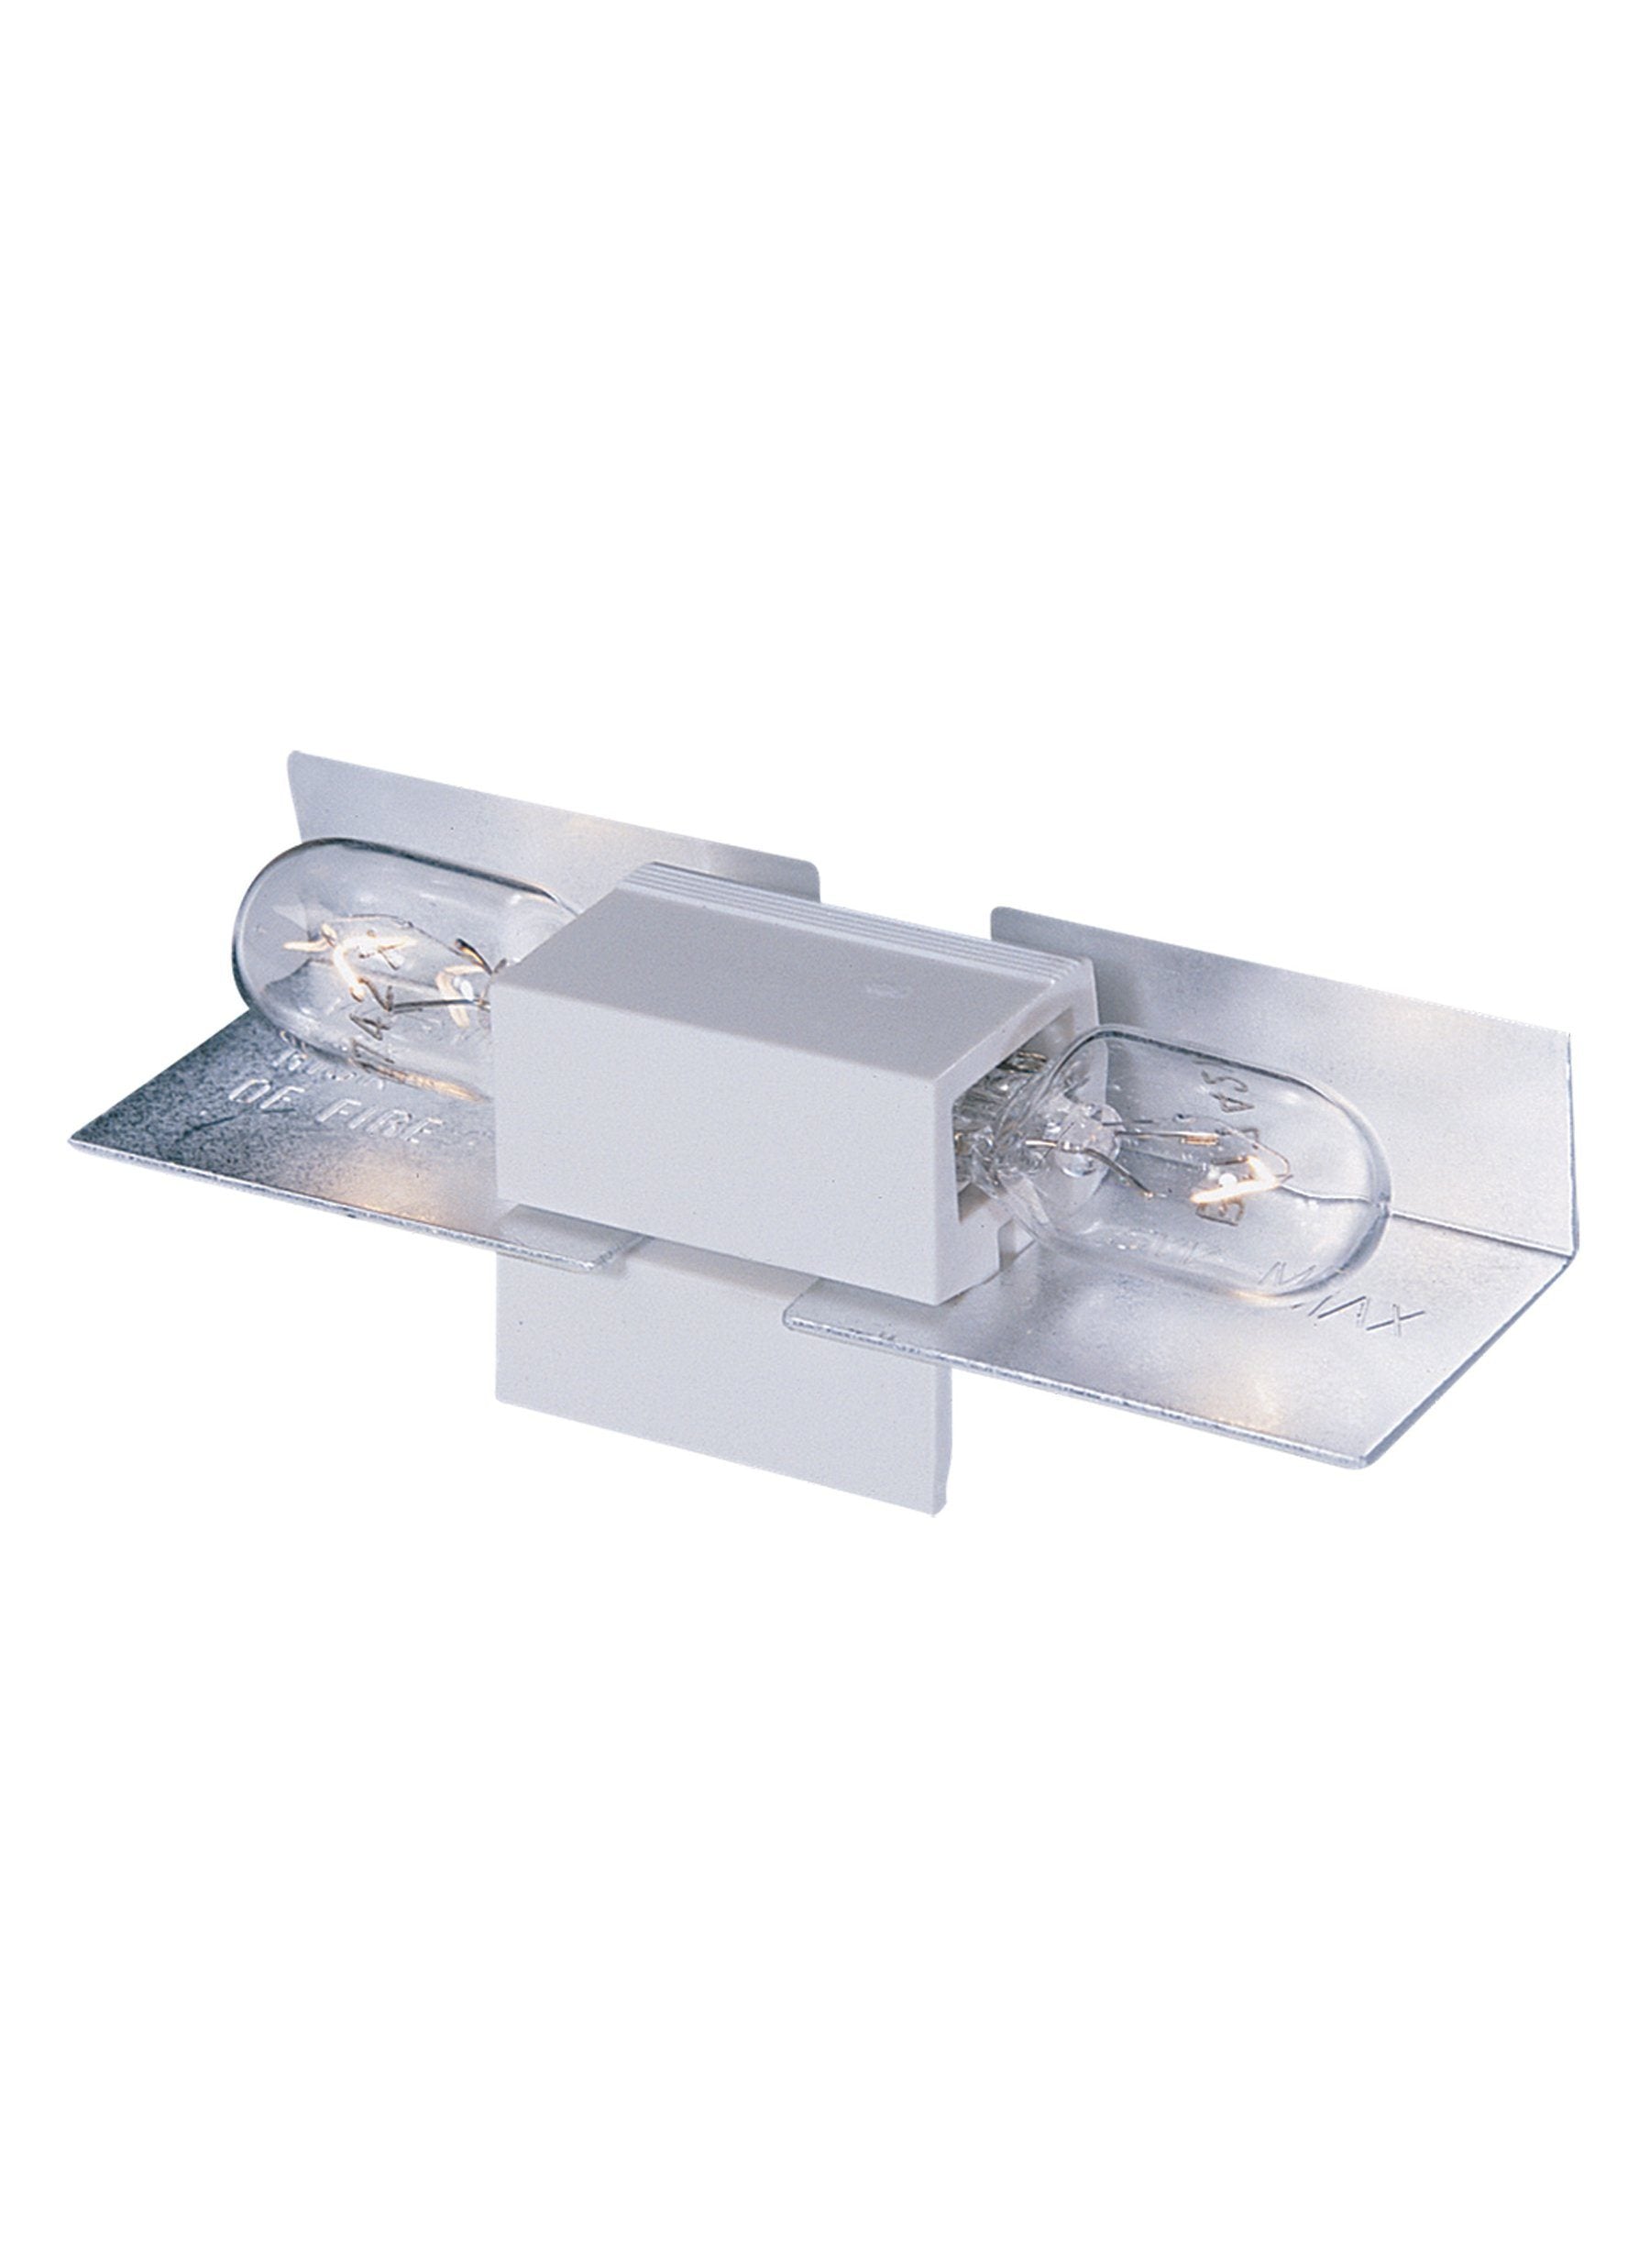 Lx Wedge Base Lampholder-15 - White Under Cabinet Lighting Sea Gull Lighting 